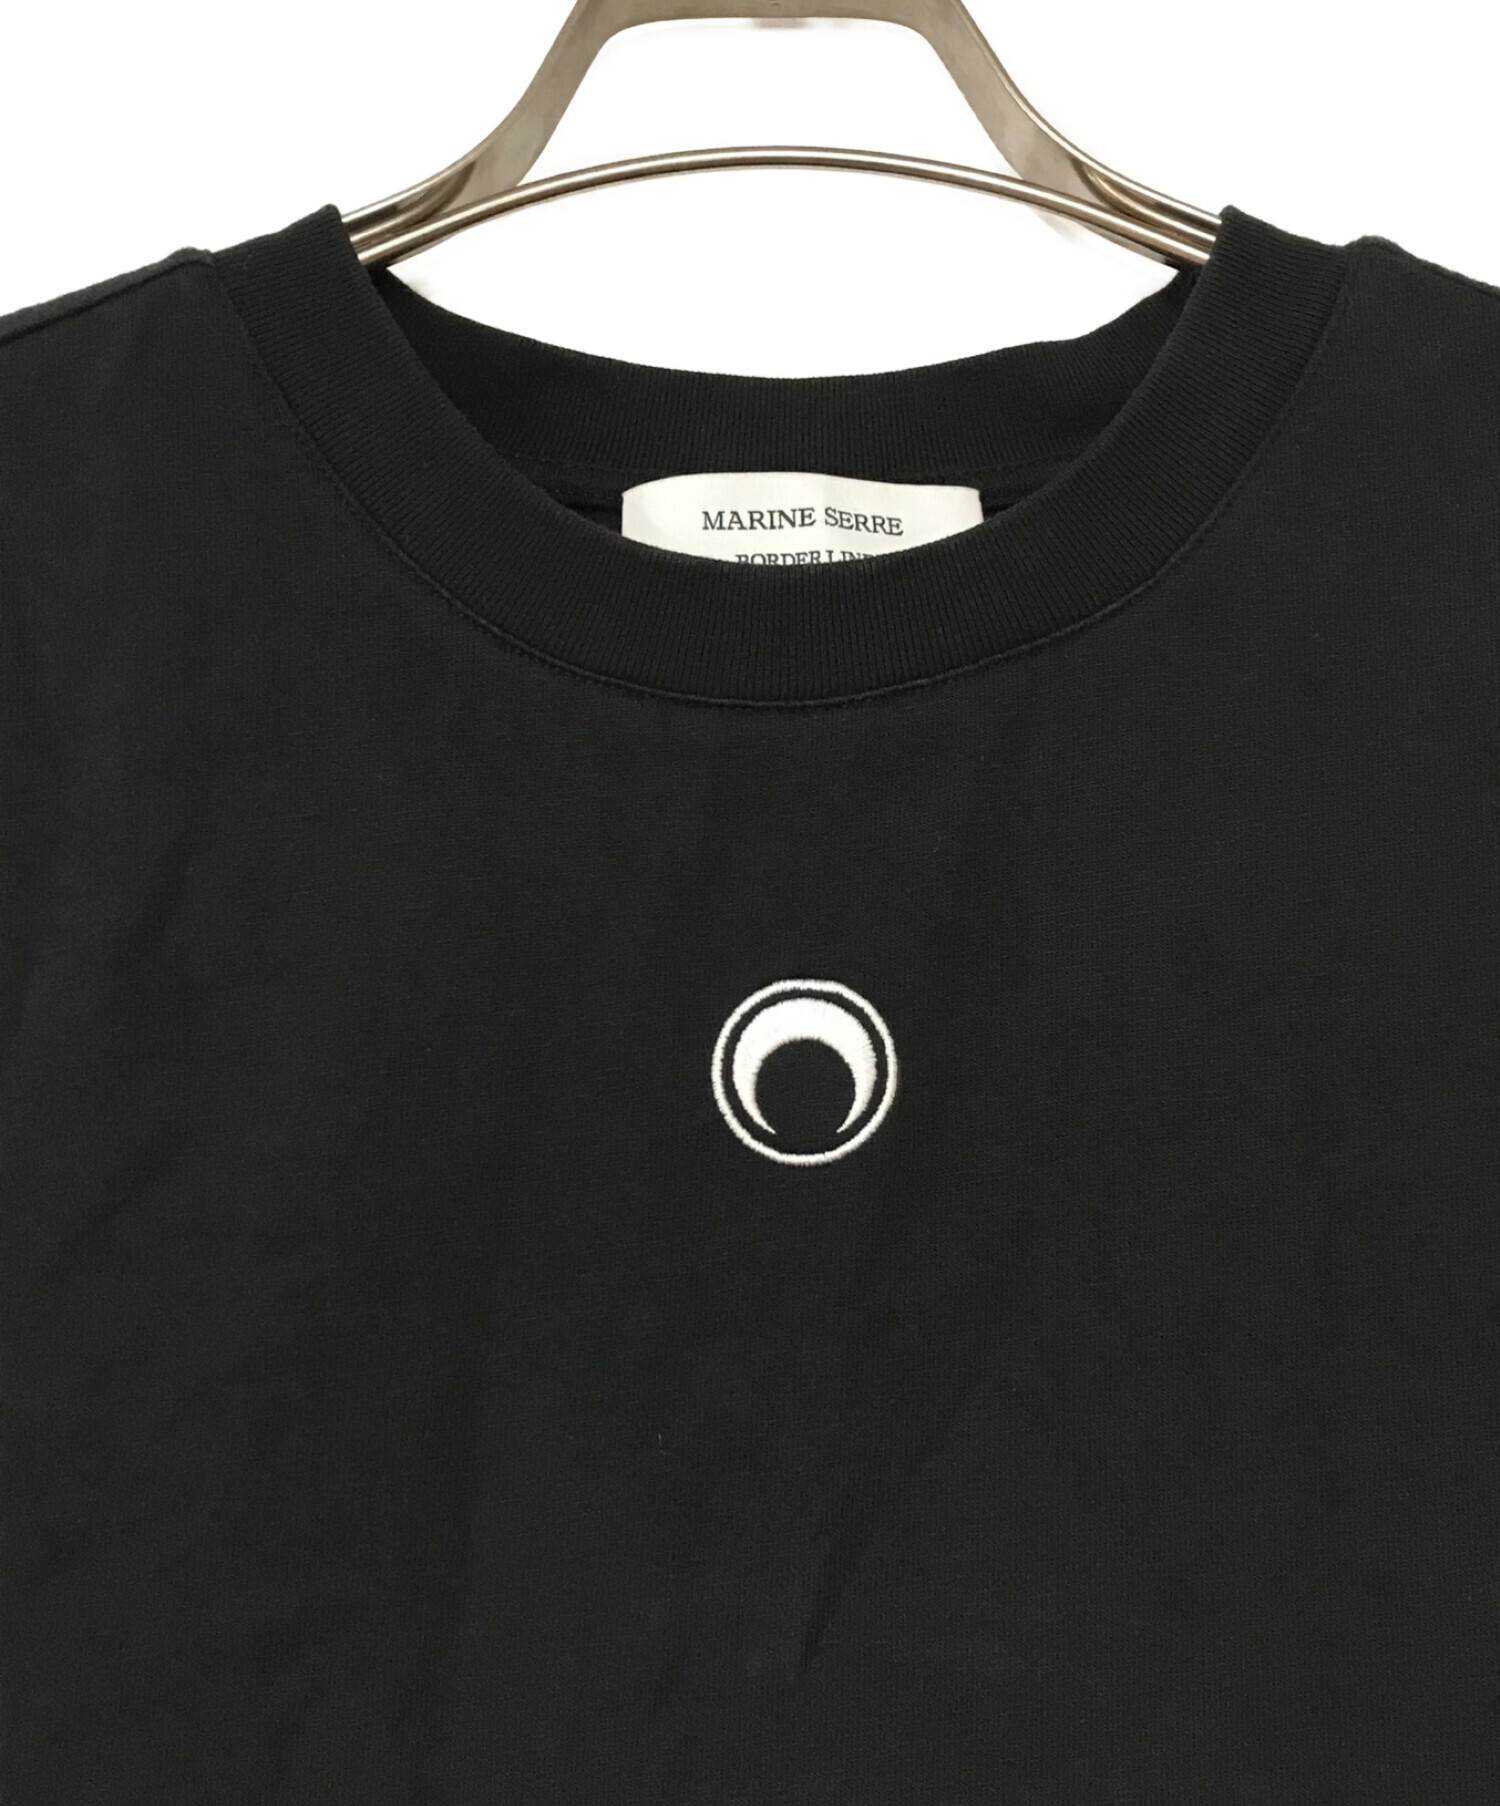 MARINE SERRE (マリーンセル) Tシャツ ブラック サイズ:L